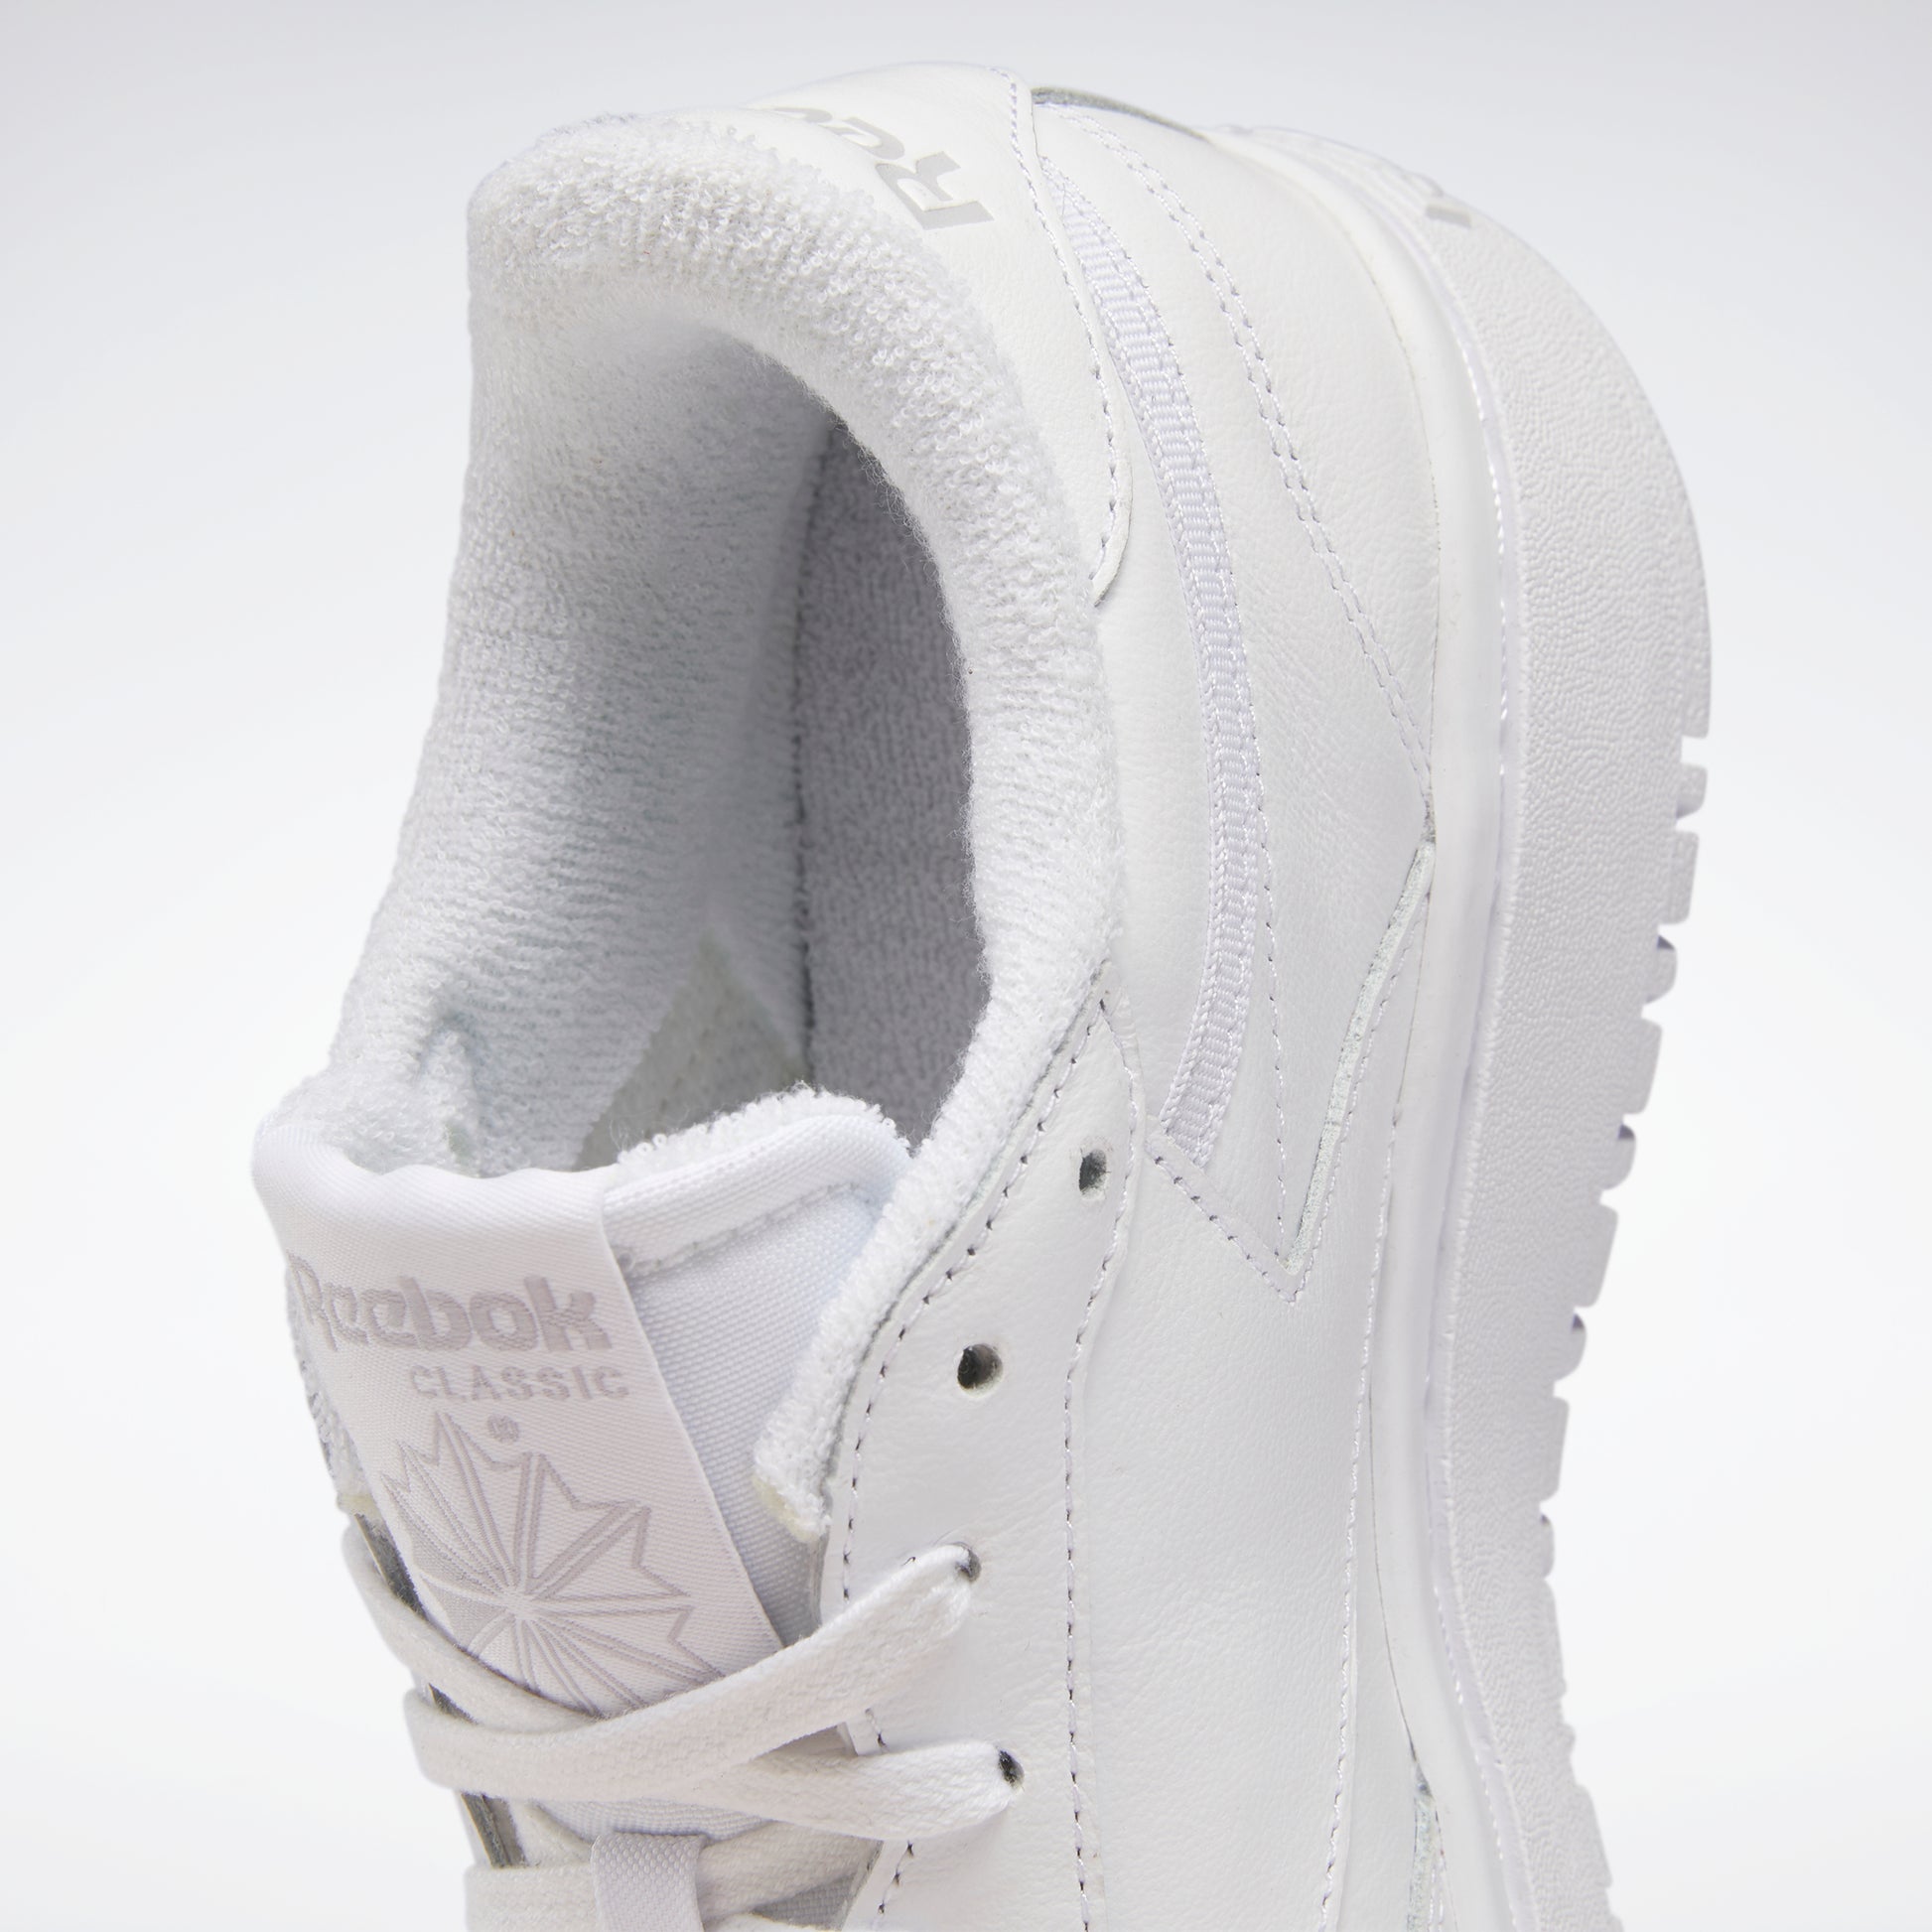 Club C Double Shoes White/White/Cold Grey 2 – Reebok Australia